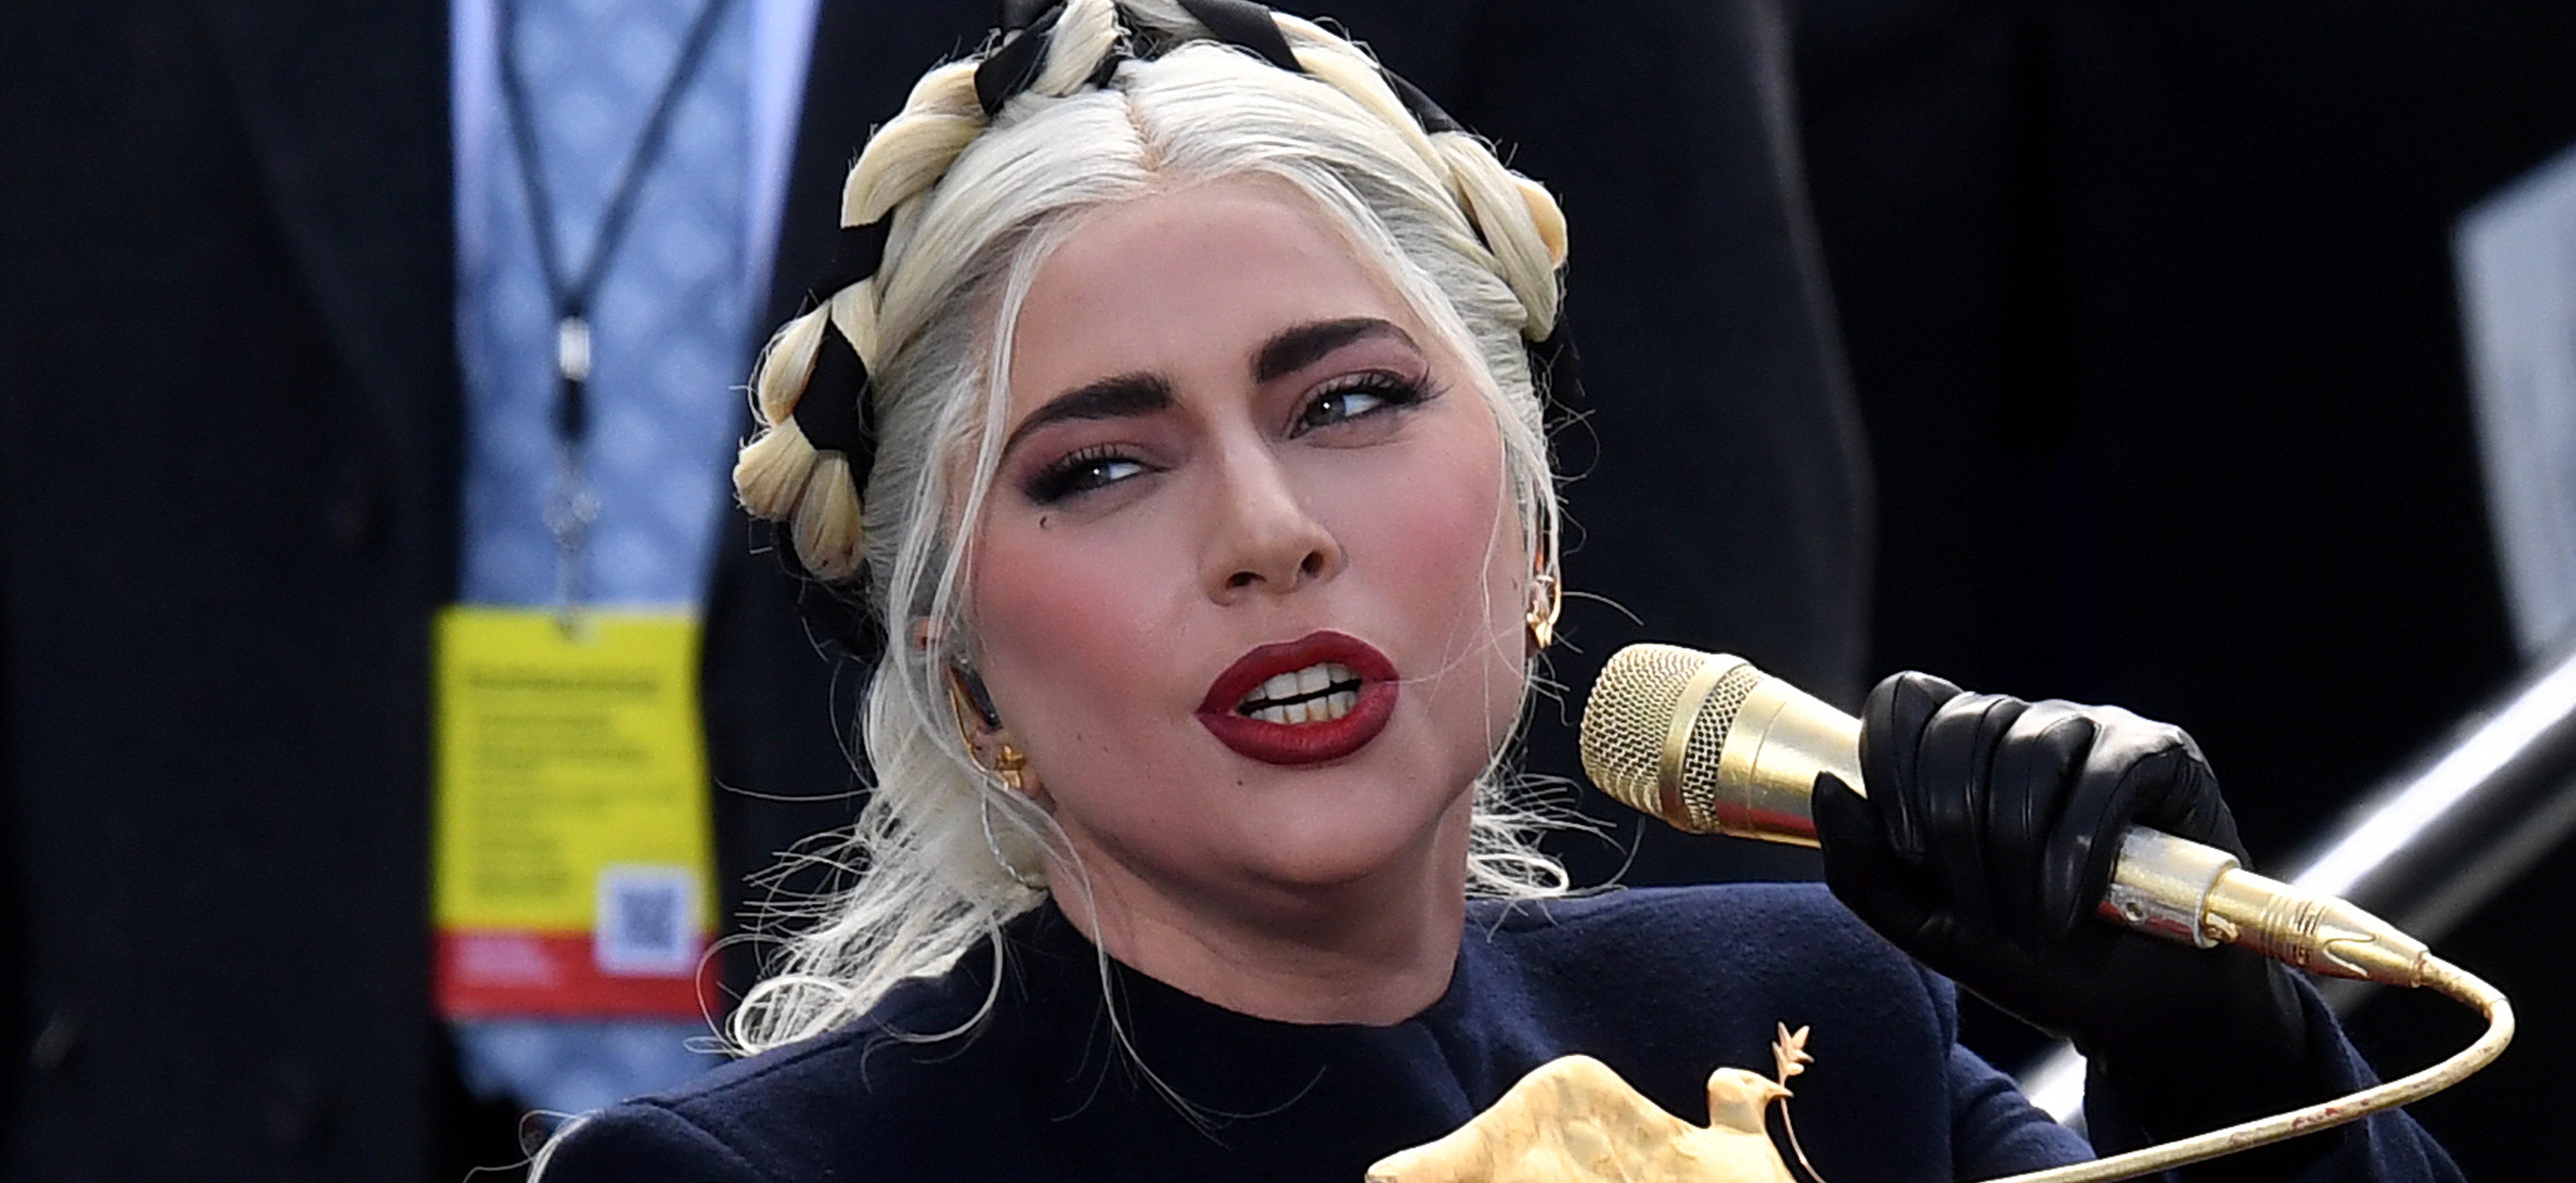 Look de Lady Gaga en investidura de Biden recordó a "Los Juegos del Hambre": incluyó potente símbolo